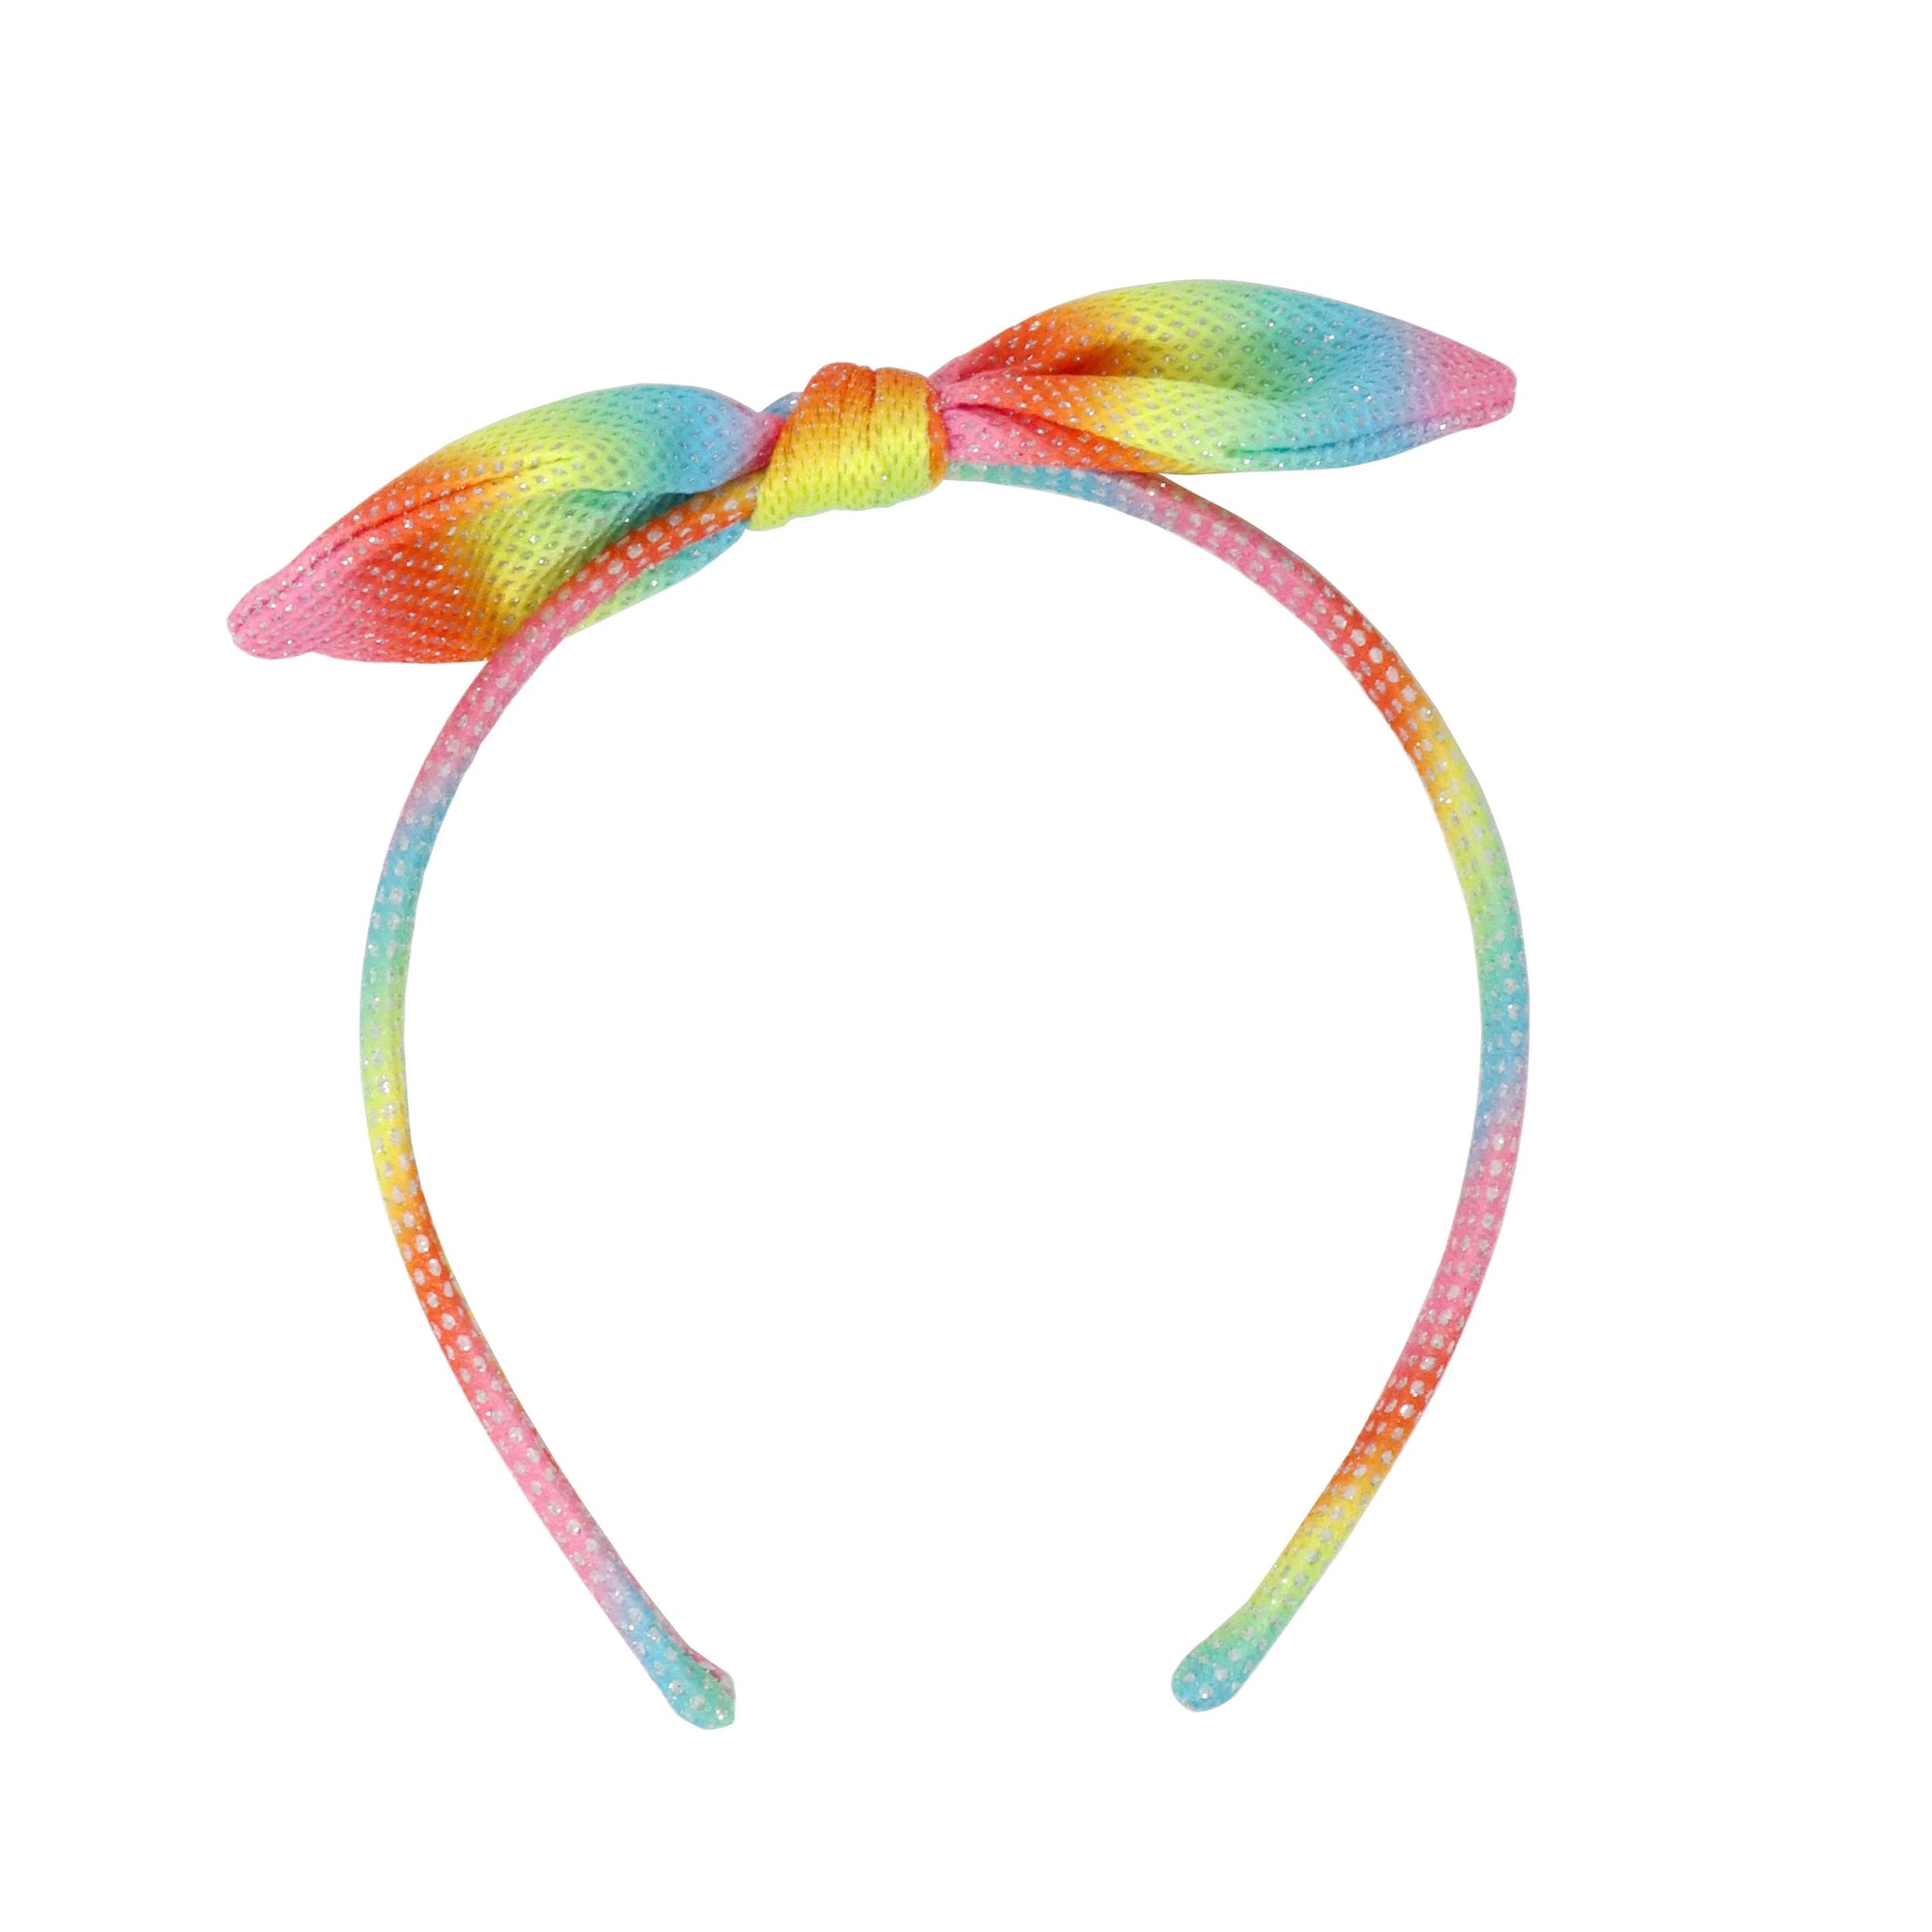 Barbie Rainbow Fantasy Tie Headband with Barbie Charm